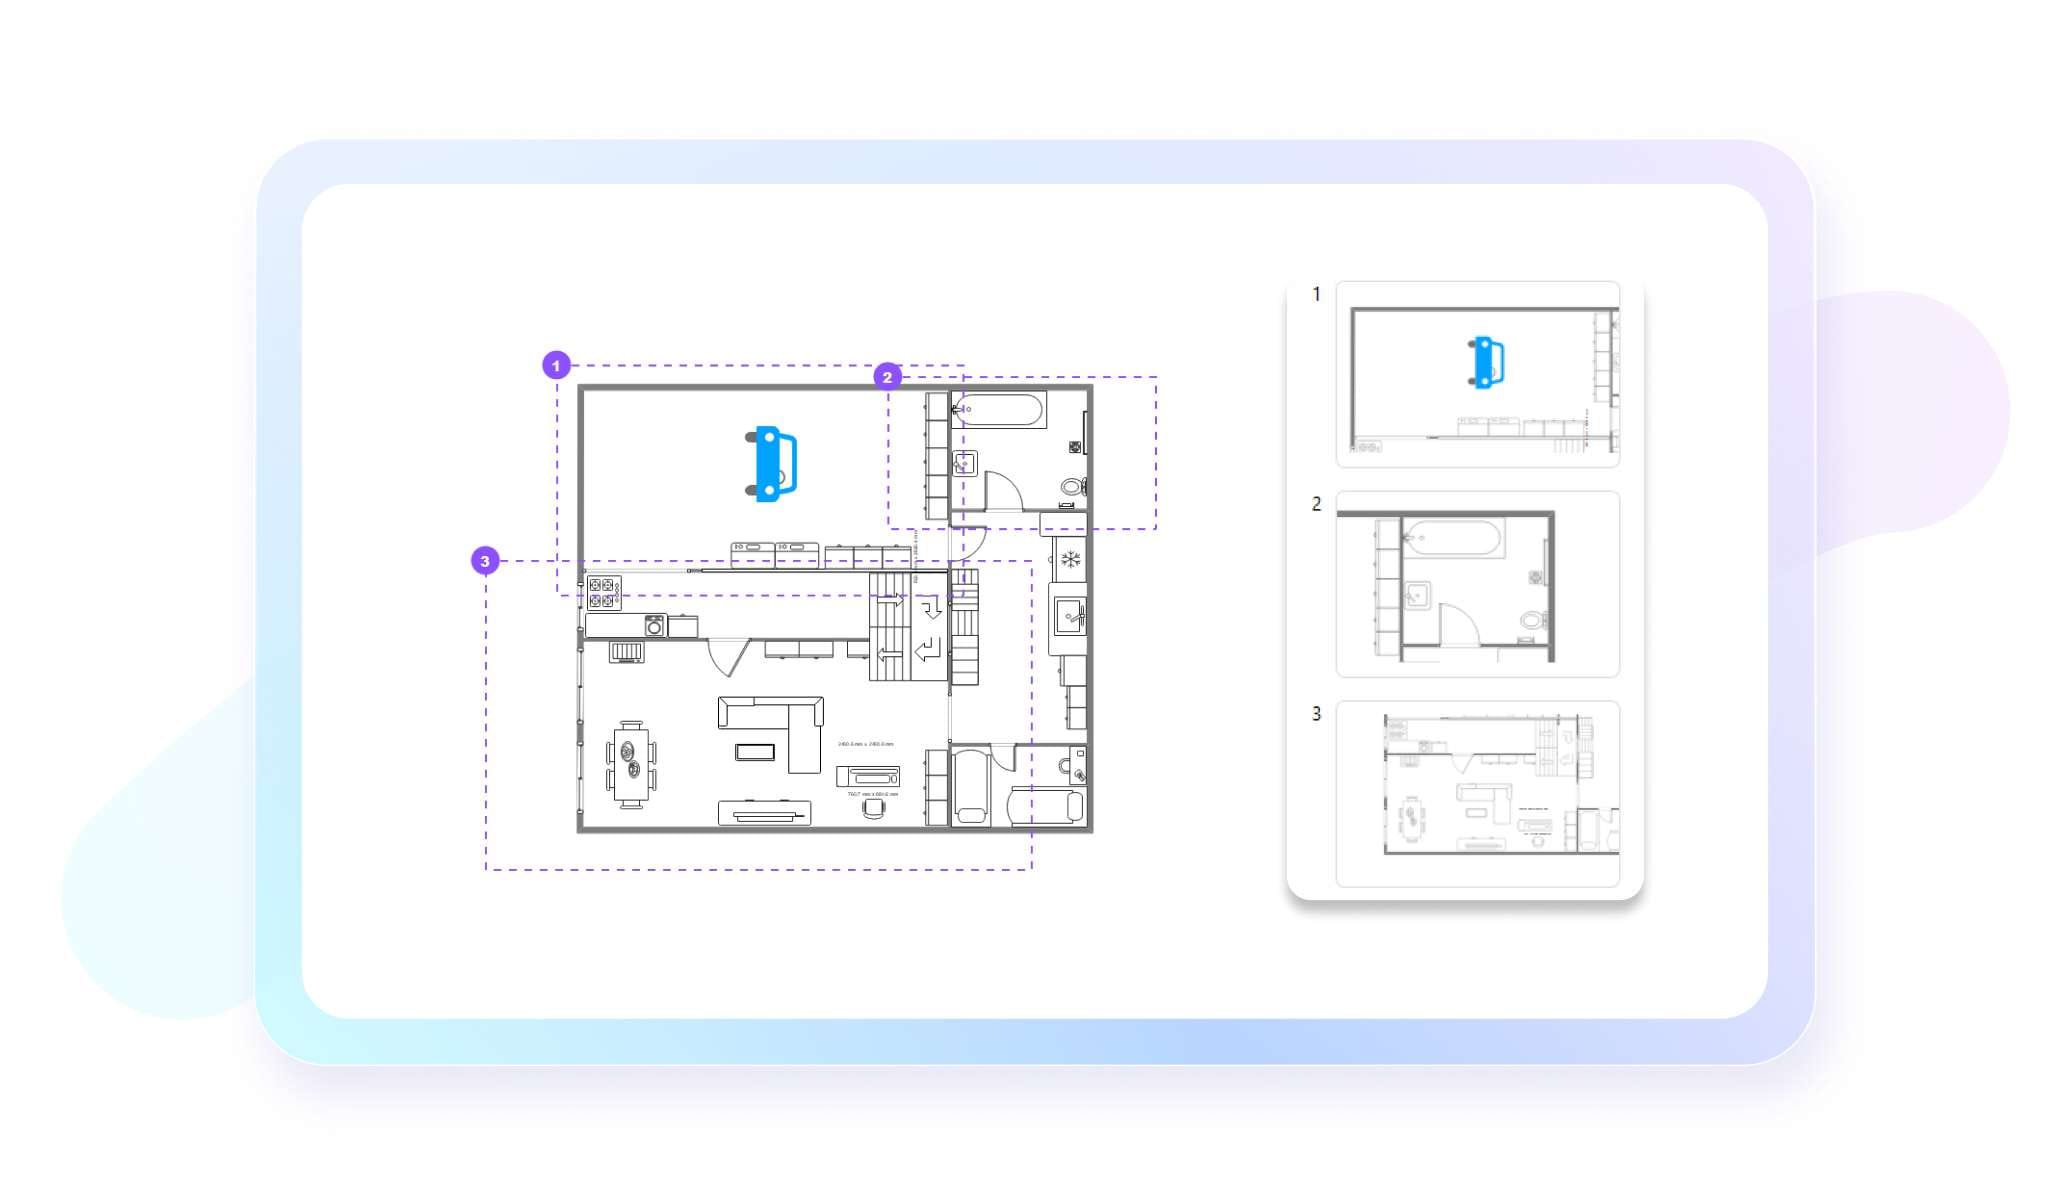 present floor plan with EdrawMax